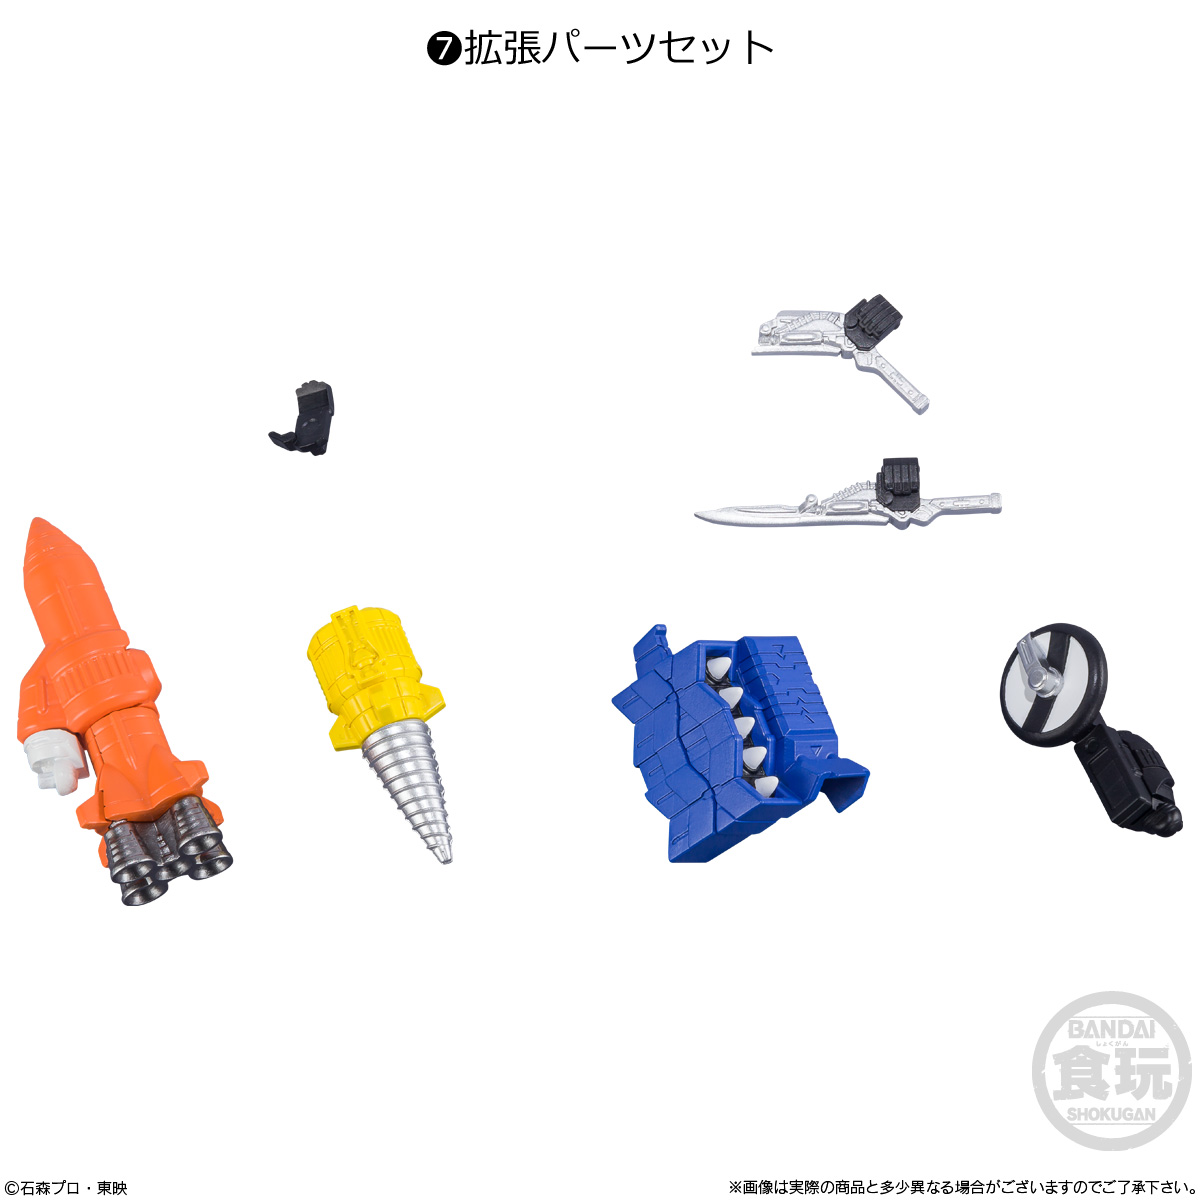 【食玩】SHODO-X『仮面ライダー14』可動フィギュア 10個入りBOX-007